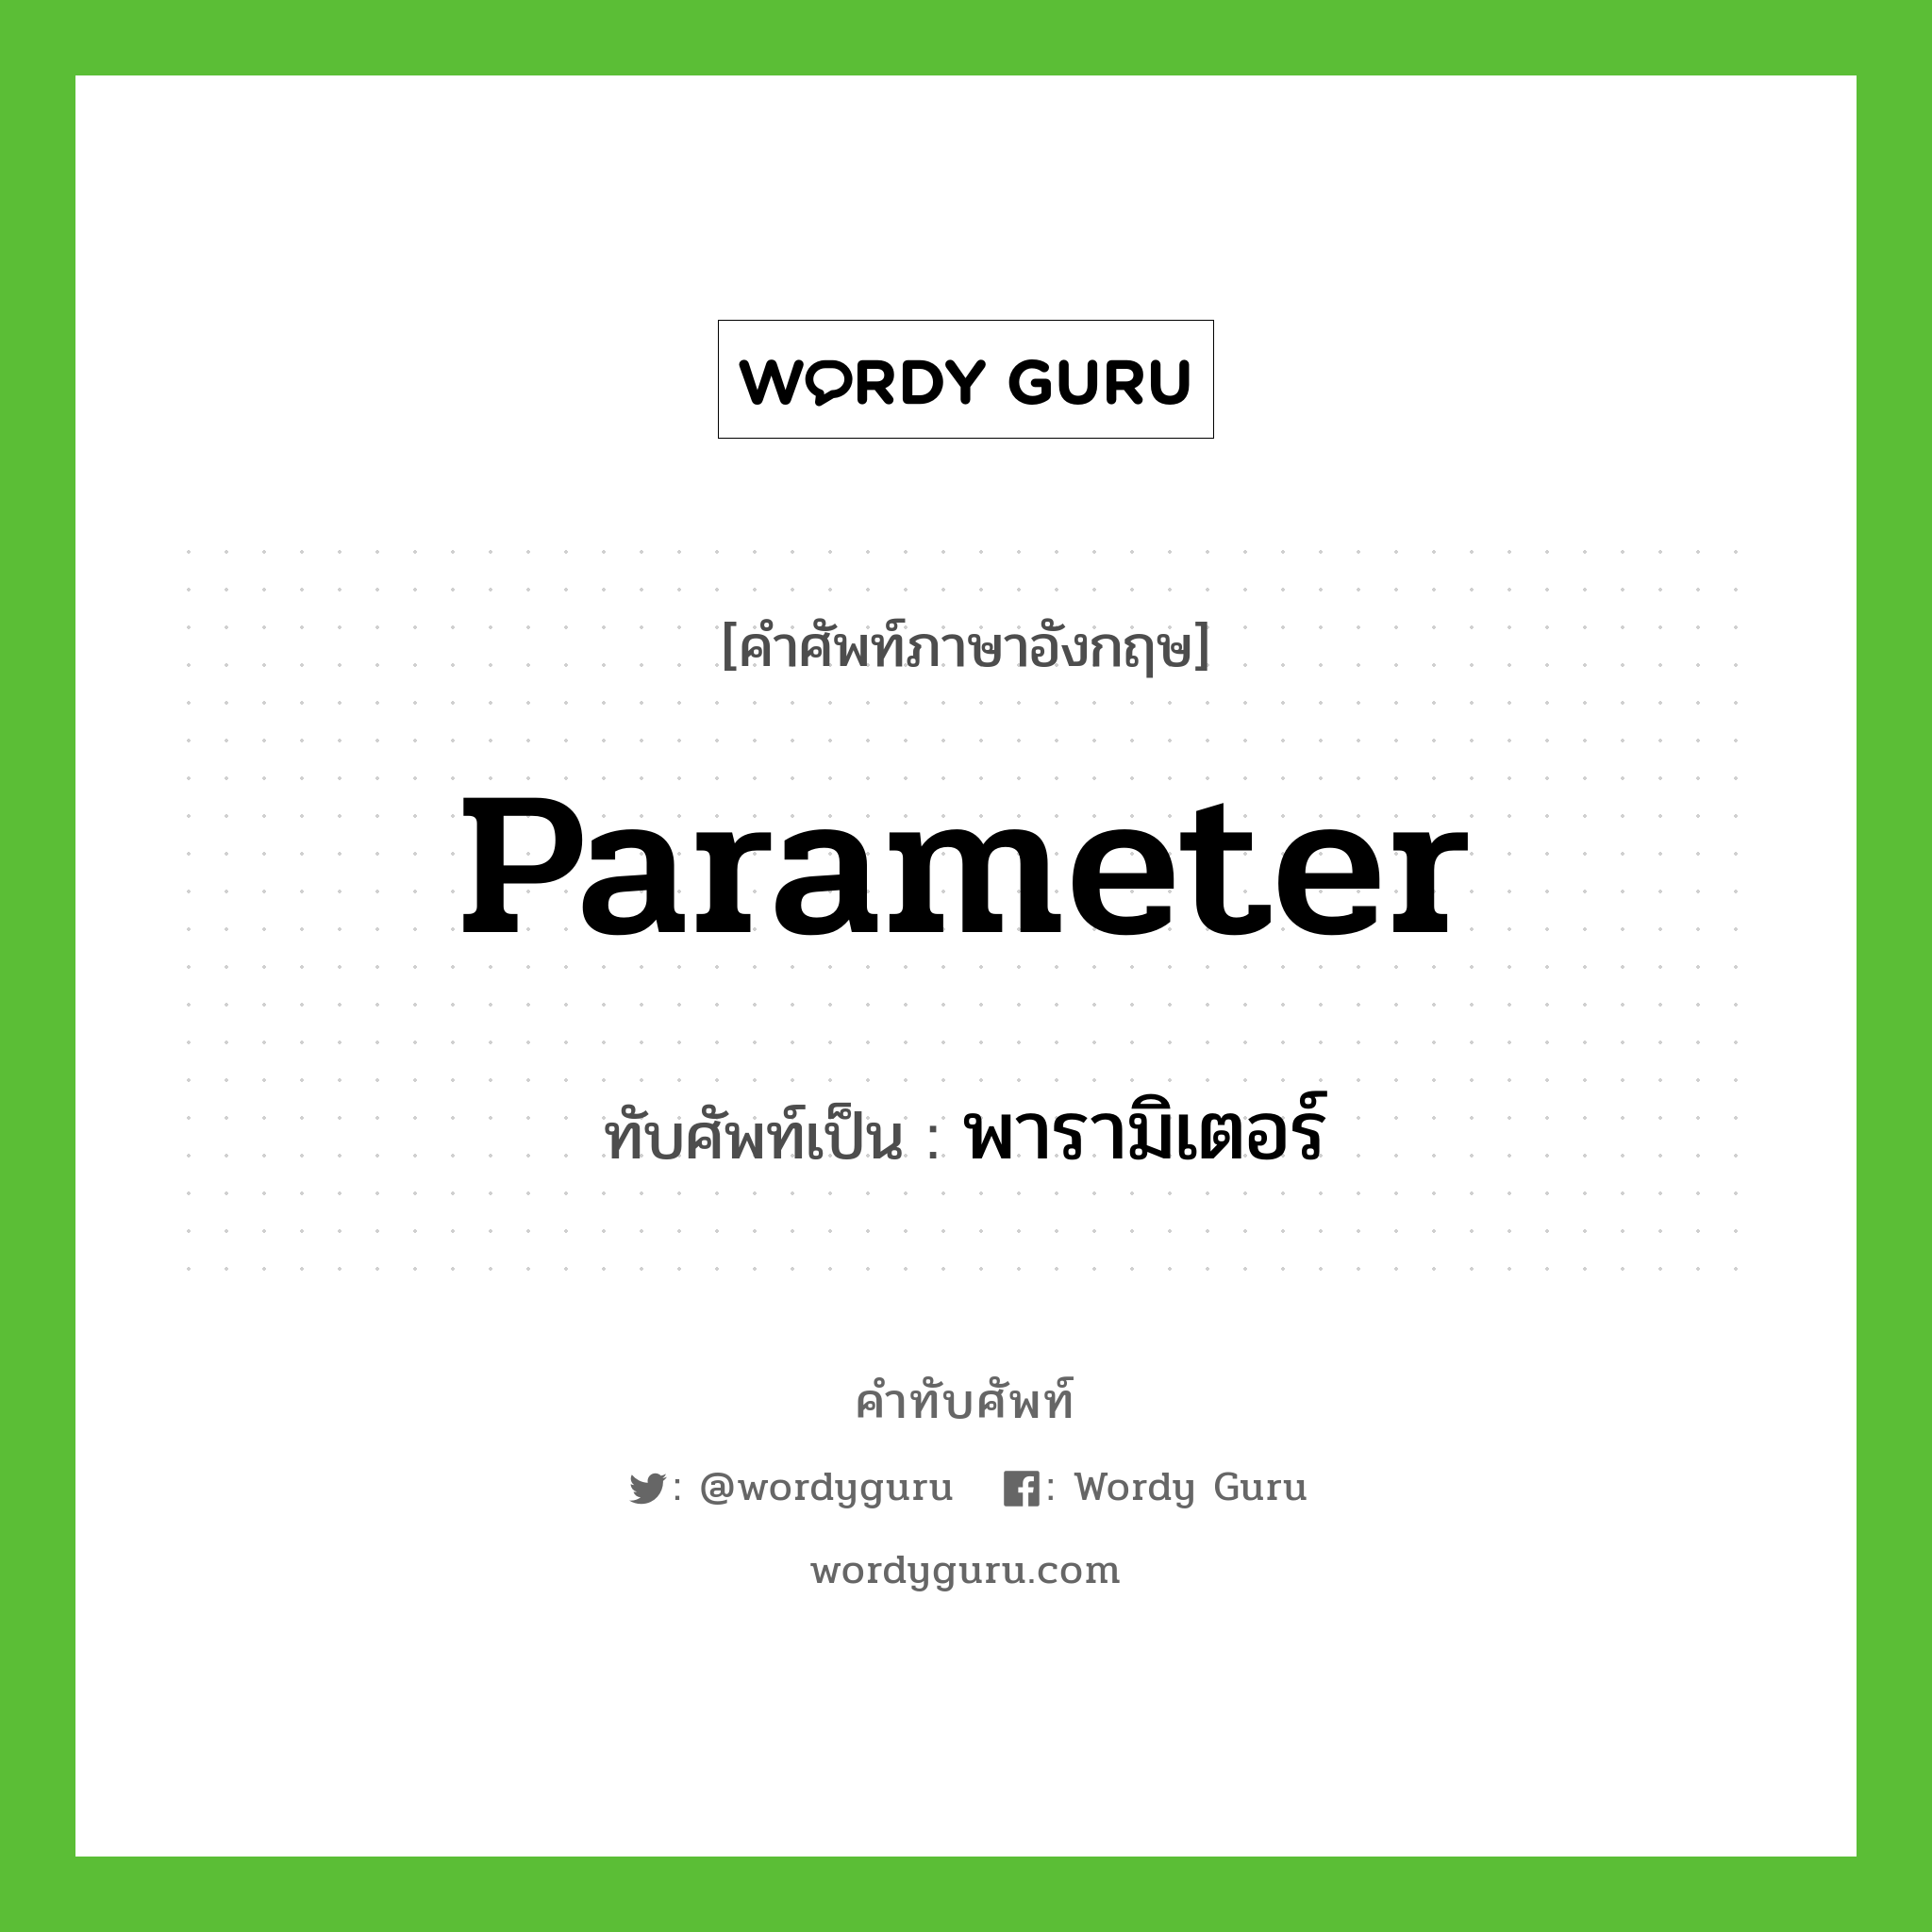 parameter เขียนเป็นคำไทยว่าอะไร?, คำศัพท์ภาษาอังกฤษ parameter ทับศัพท์เป็น พารามิเตอร์